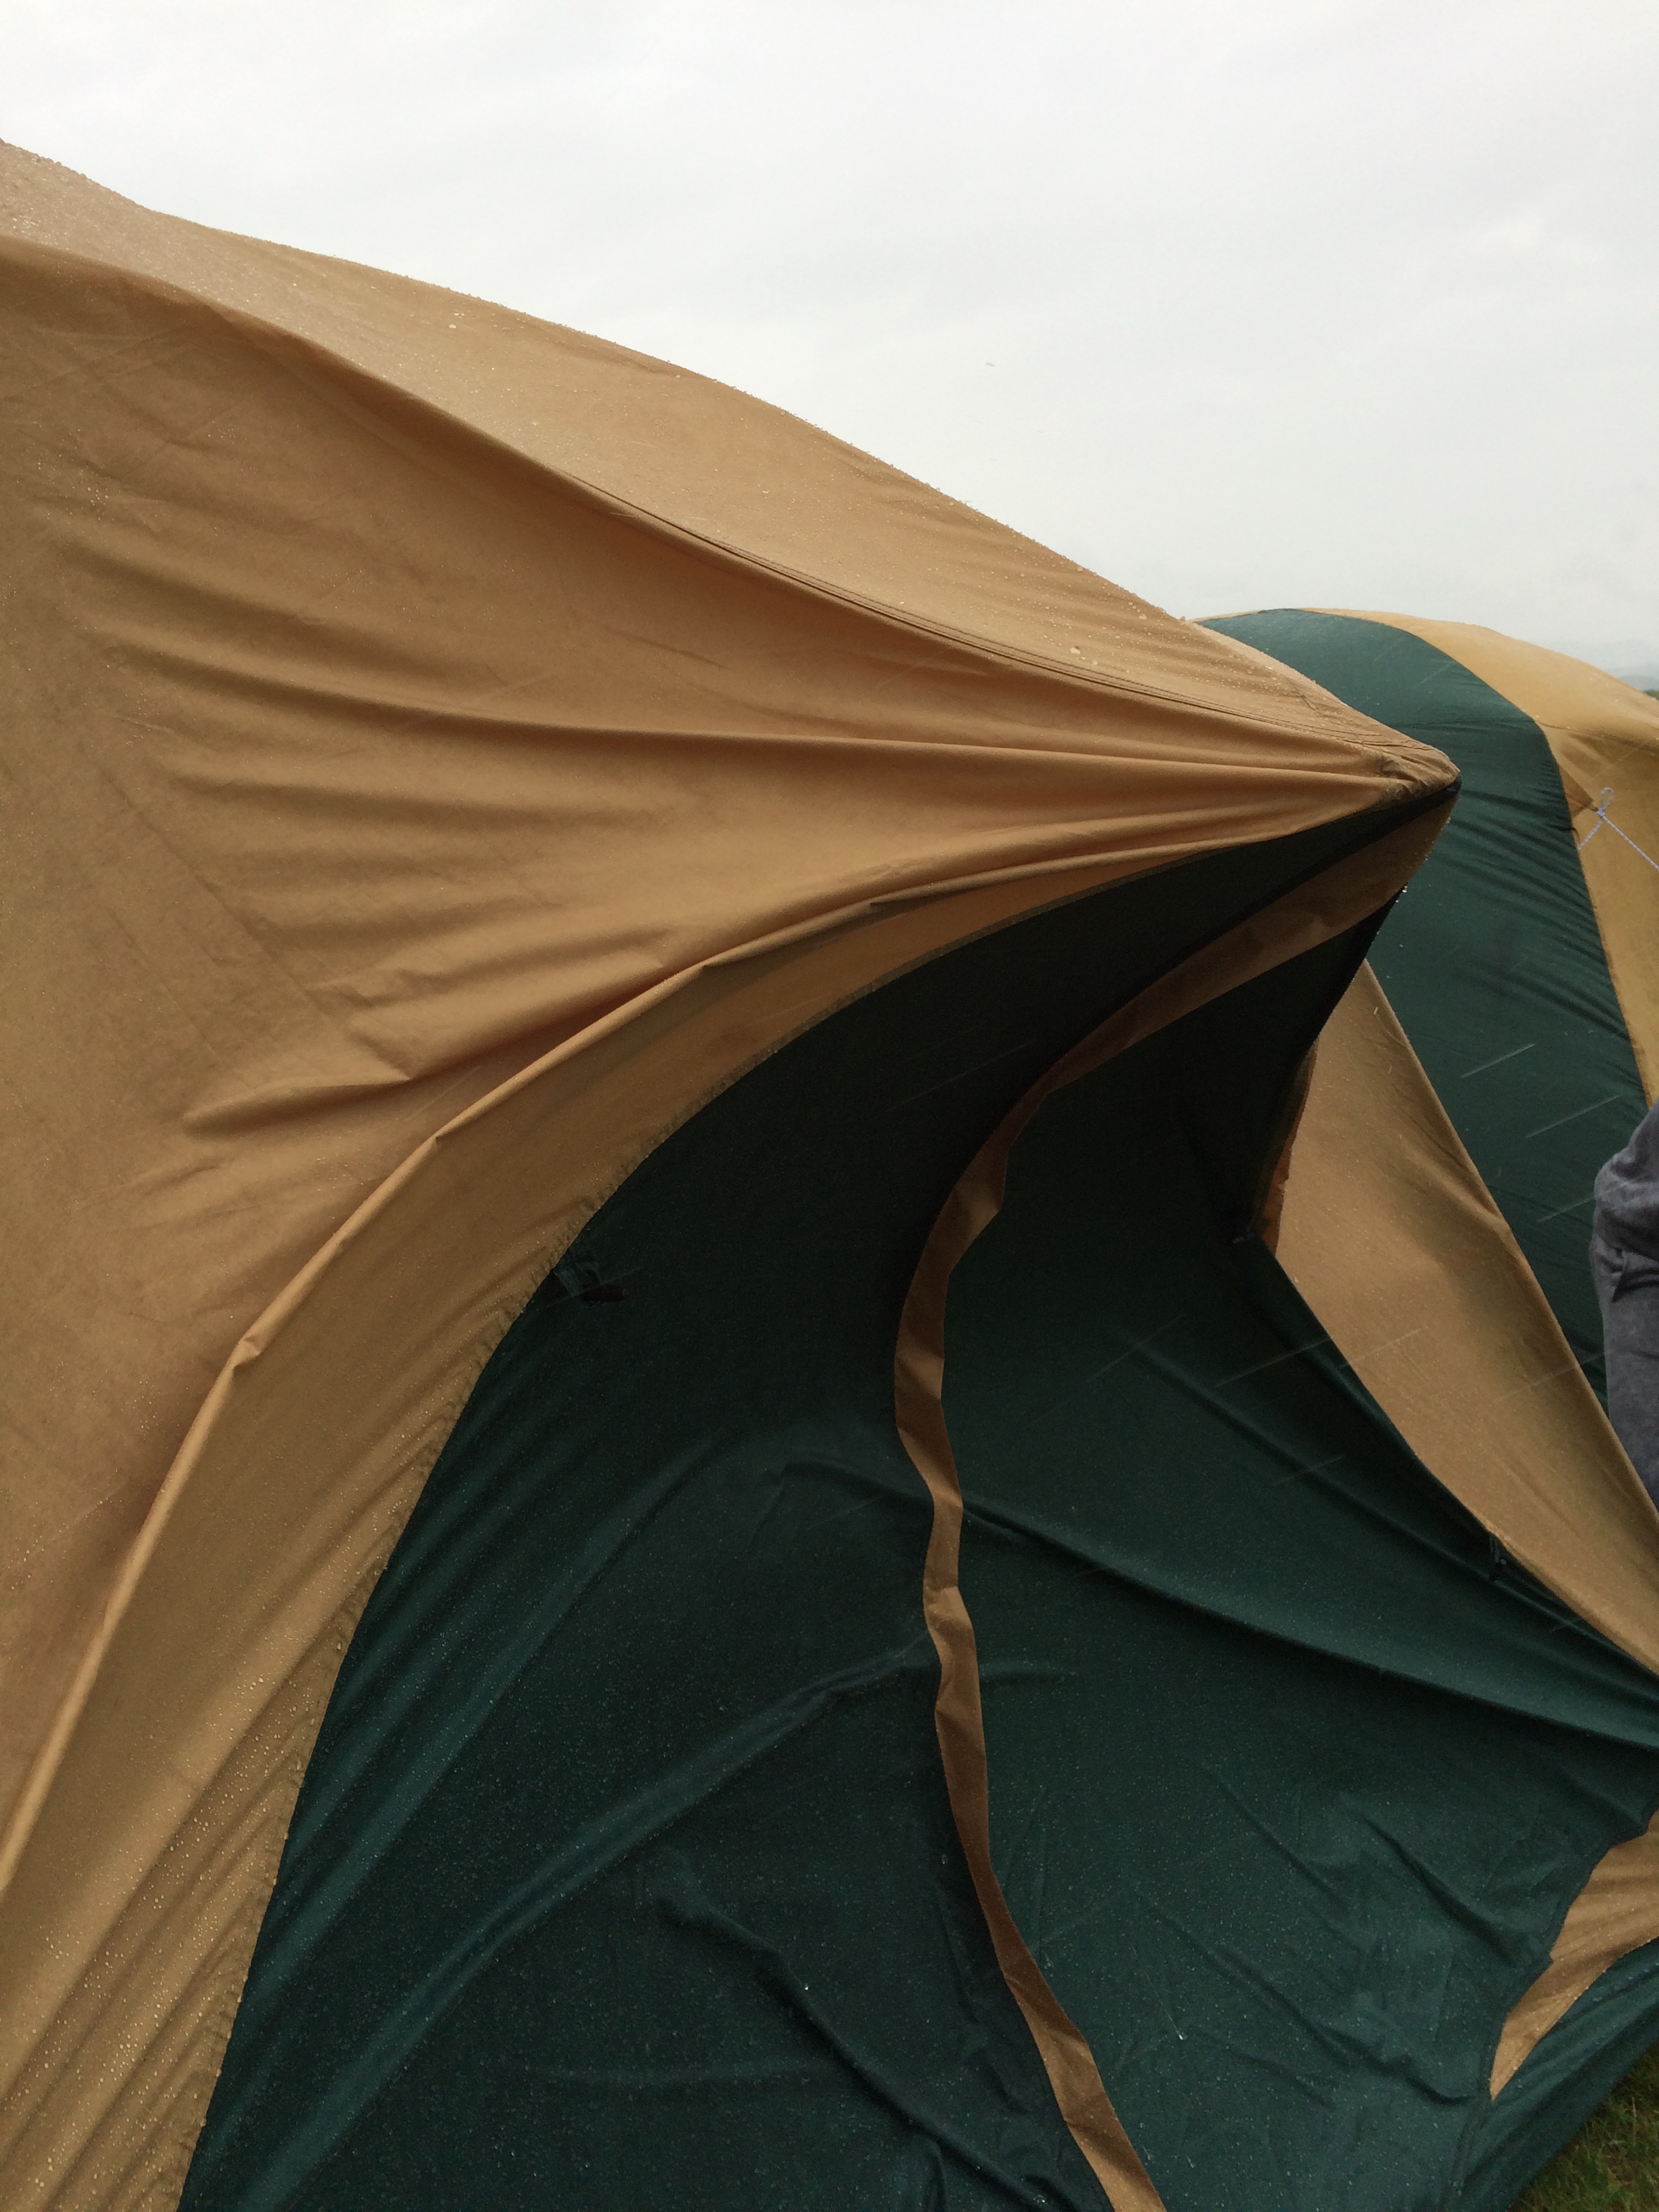 16 暴風雨警報の中 京極スリーユーパークキャンプ場でテントが飛ぶ キャンプ王